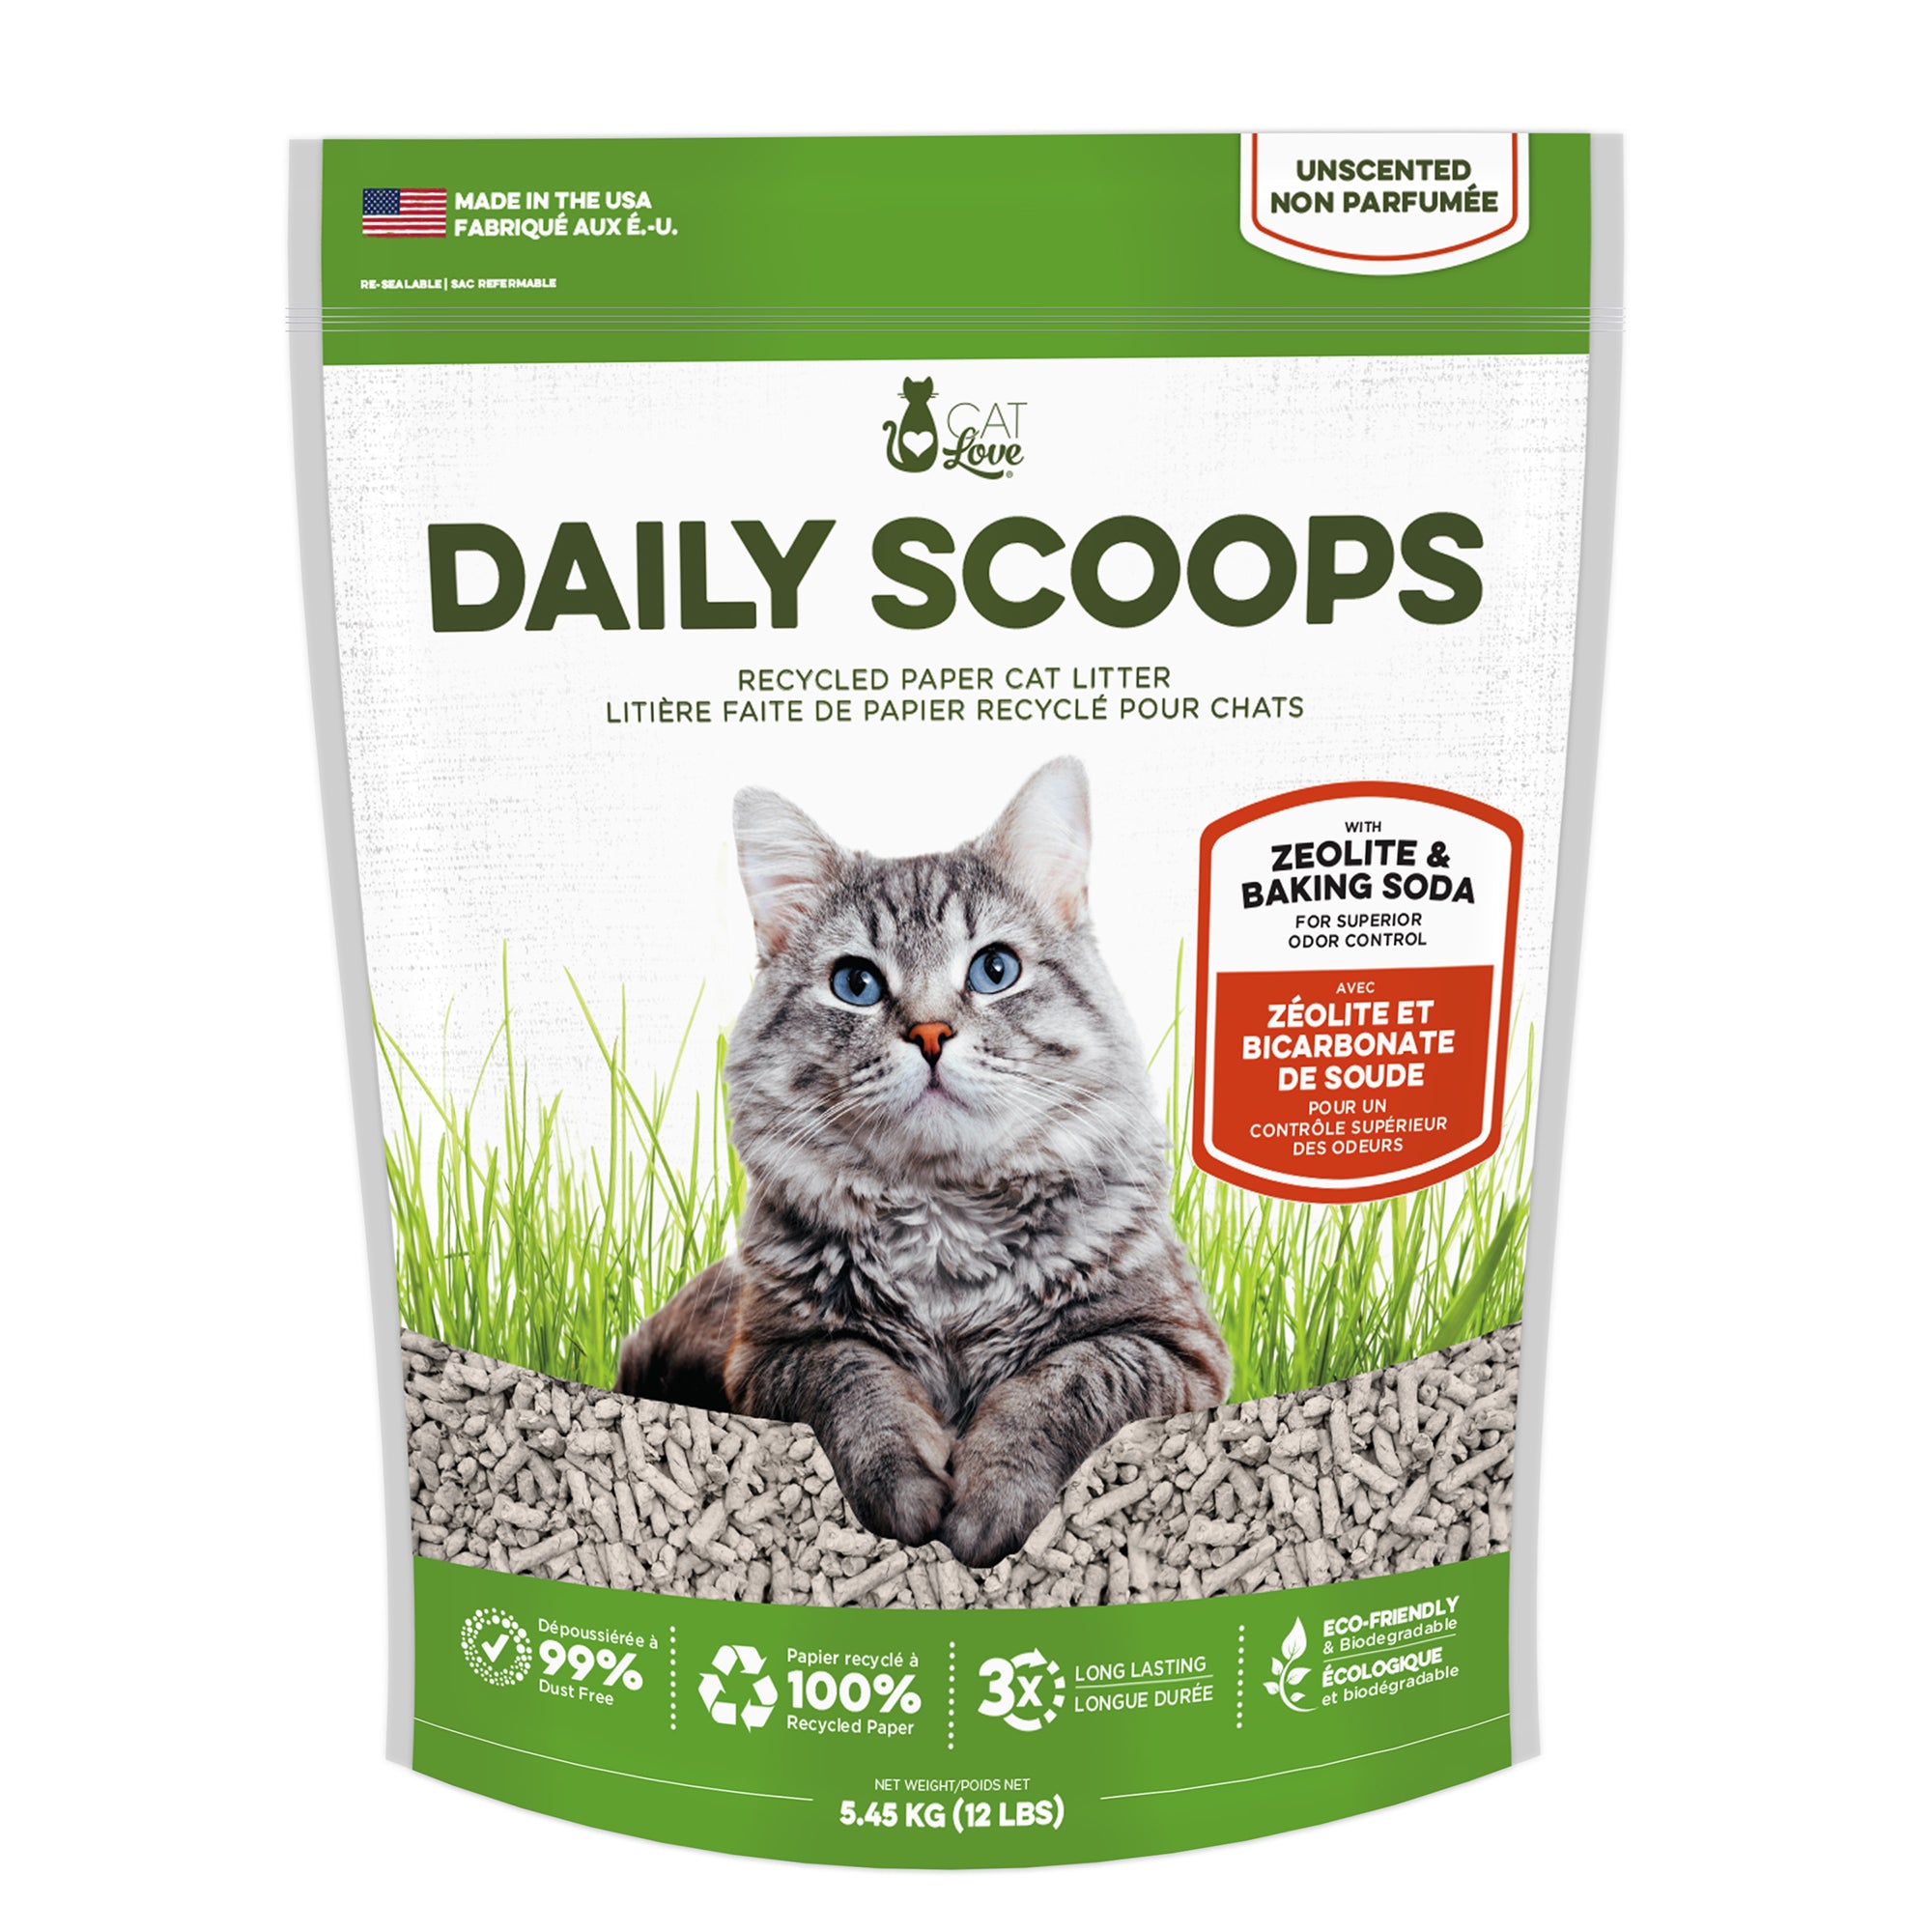 Litière pour chats Daily Scoops Cat Love faite de papier recyclé, sac de 5,44 kg (12 lb)